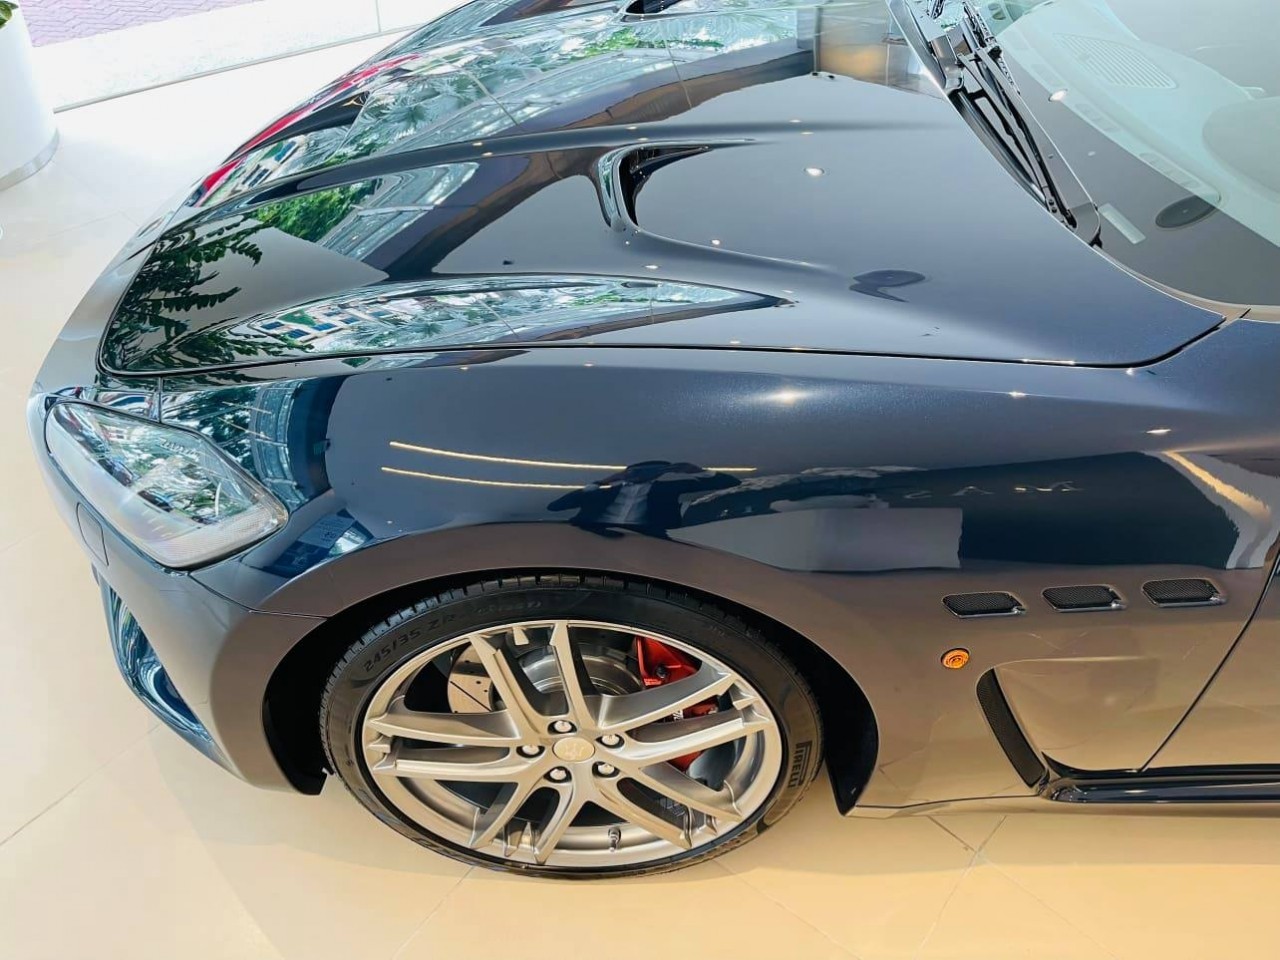 Cận cảnh Maserati GranTurismo Sport tại Việt Nam với giá 13,8 tỷ đồng